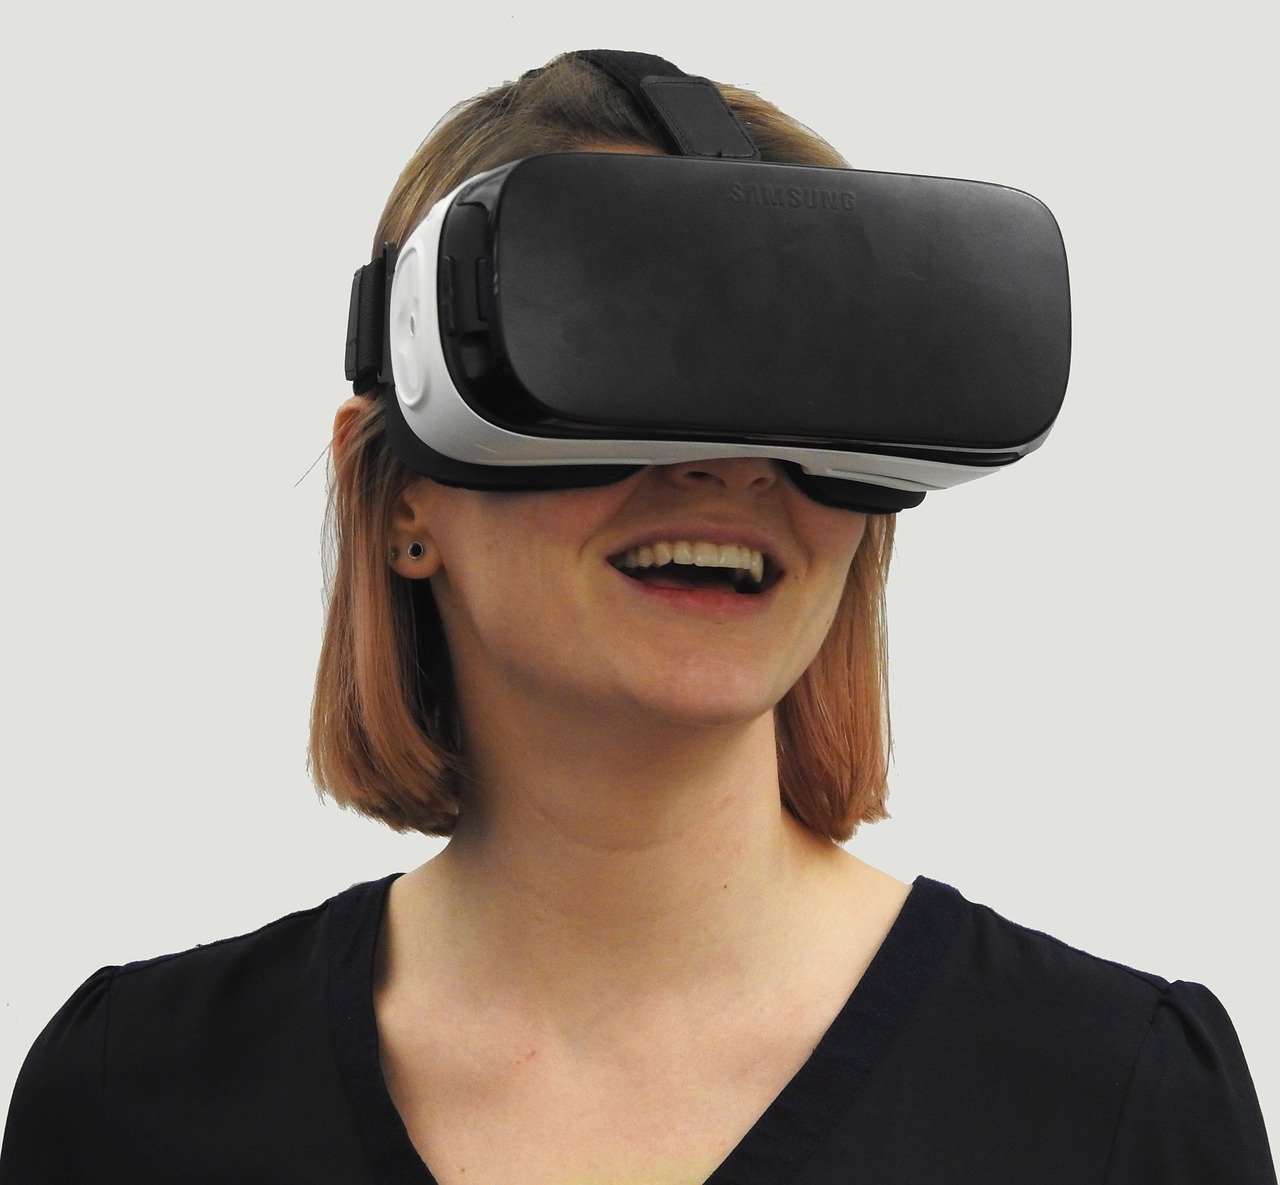 בחורה עם משקפיי VR